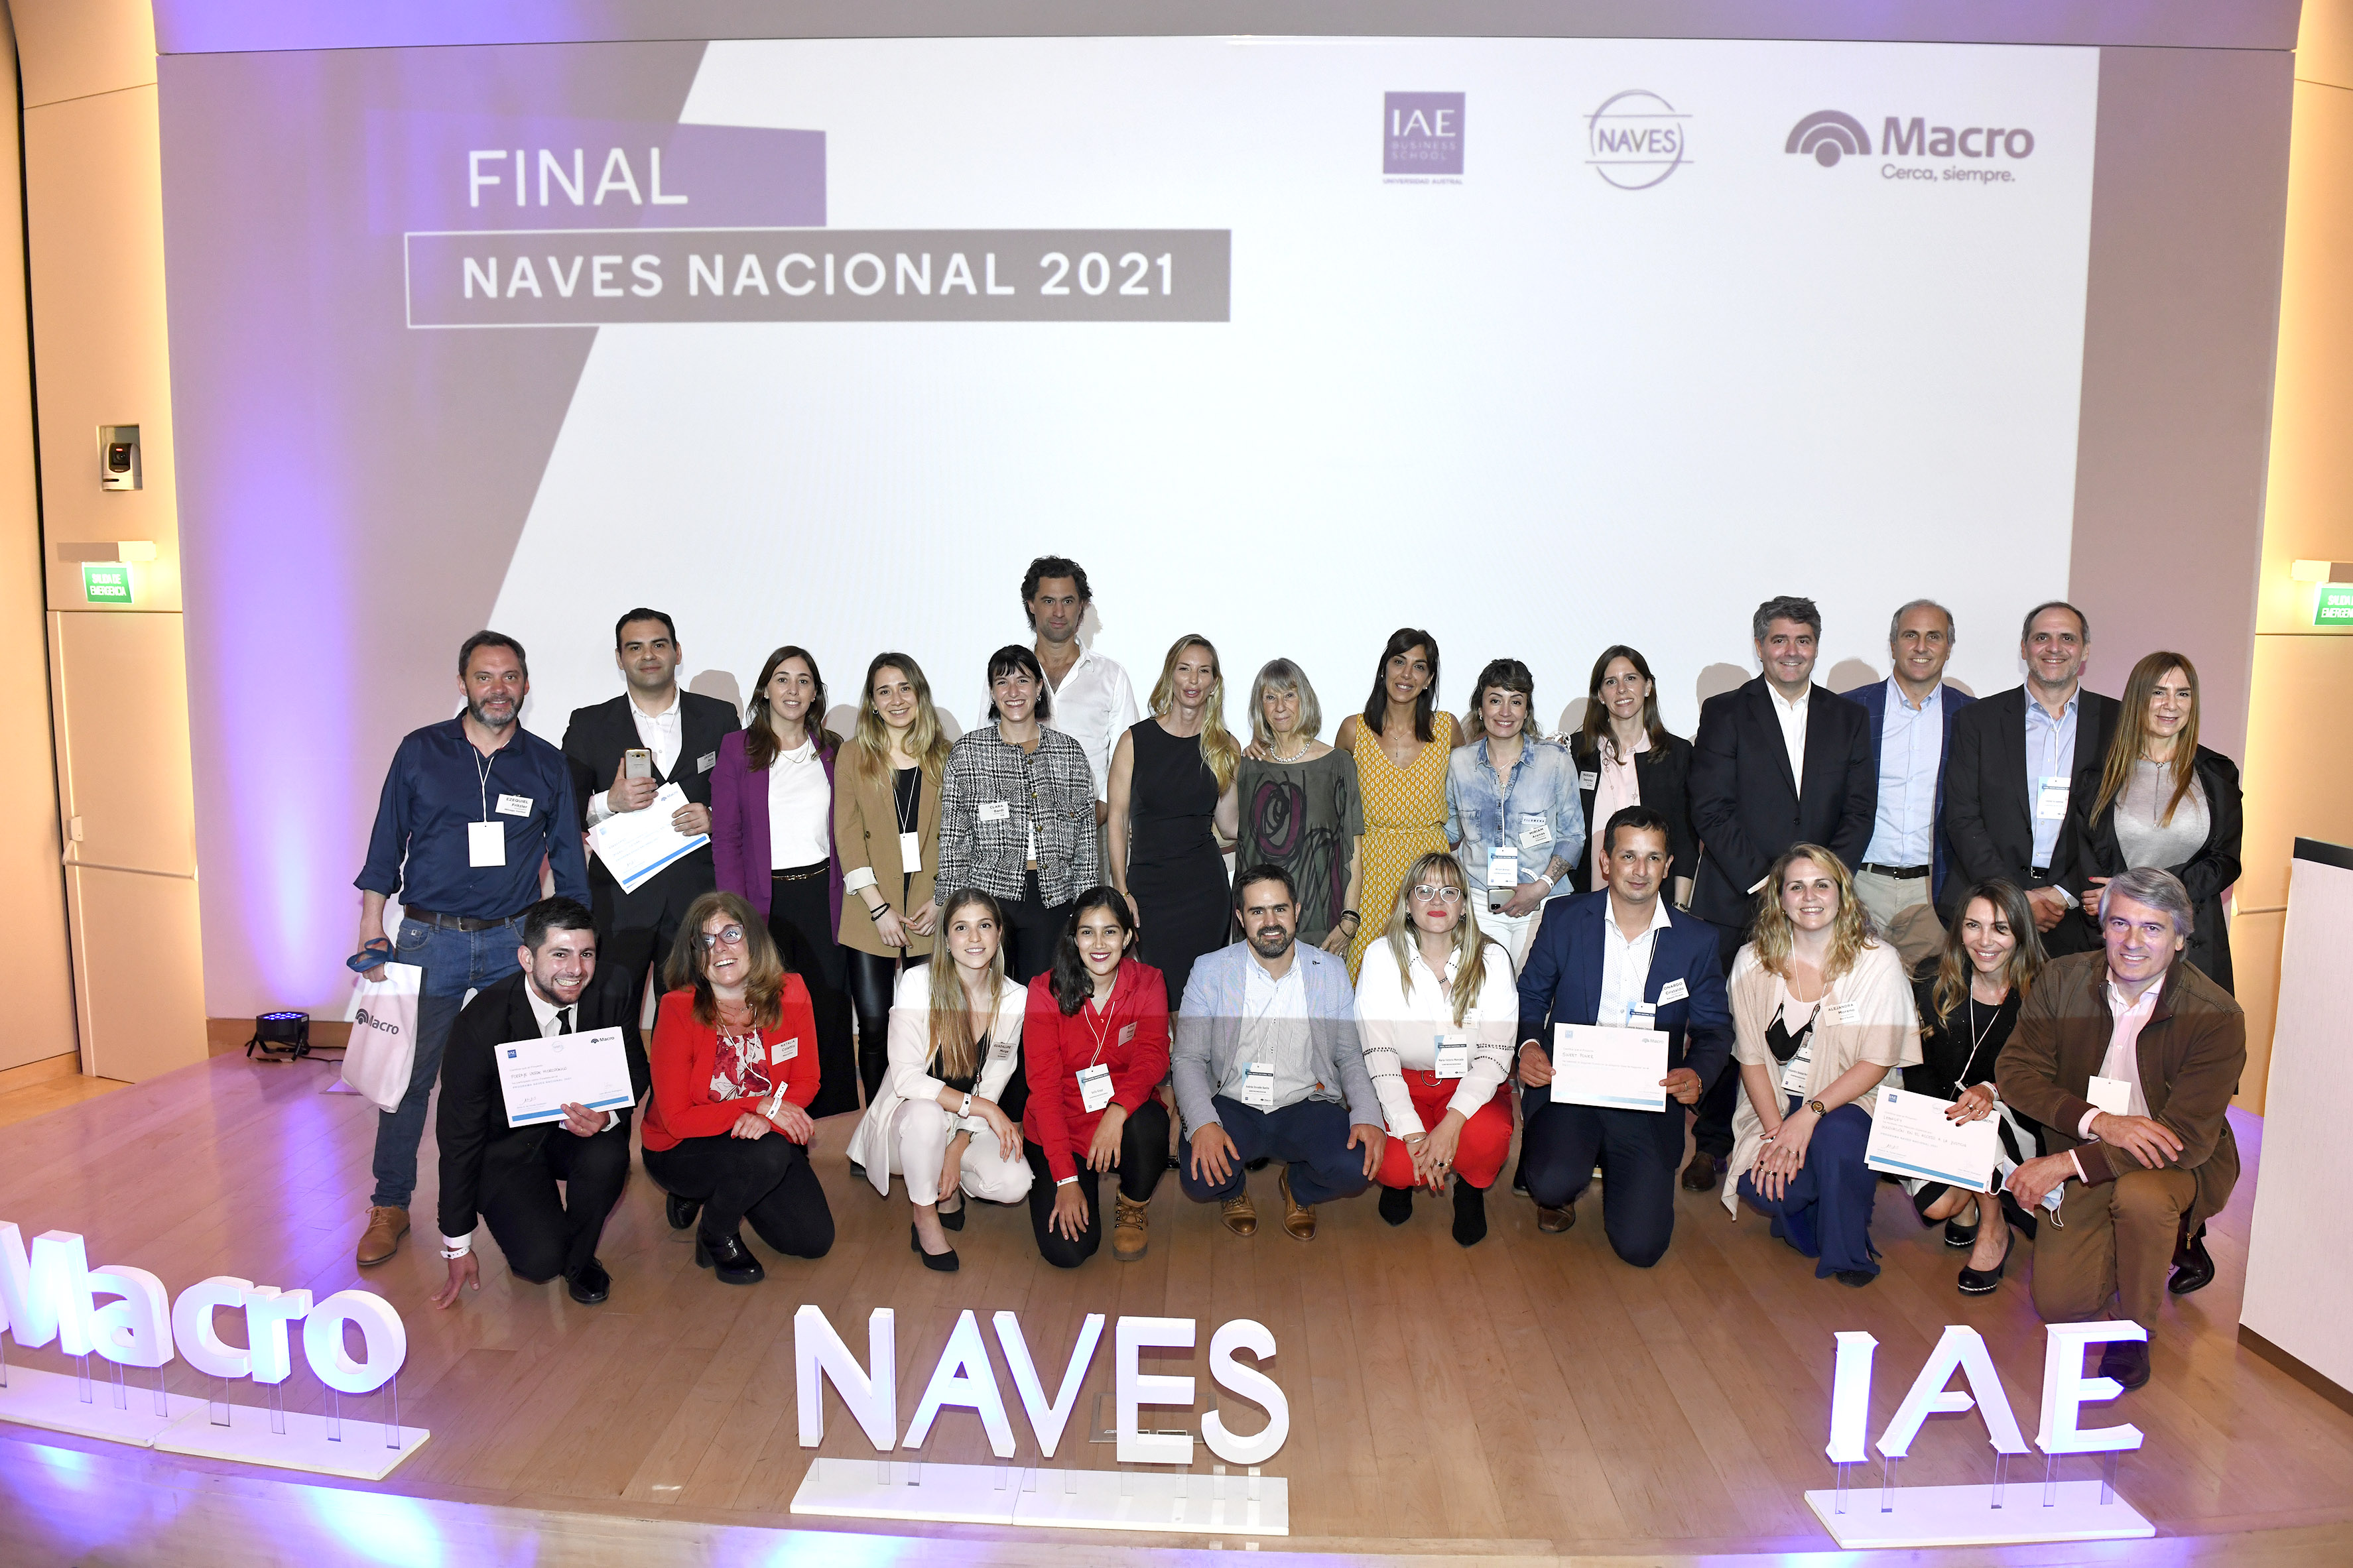 Naves 2021: Banco Macro y el Centro de Entrepreneurship del IAE premiaron a los ganadores del año